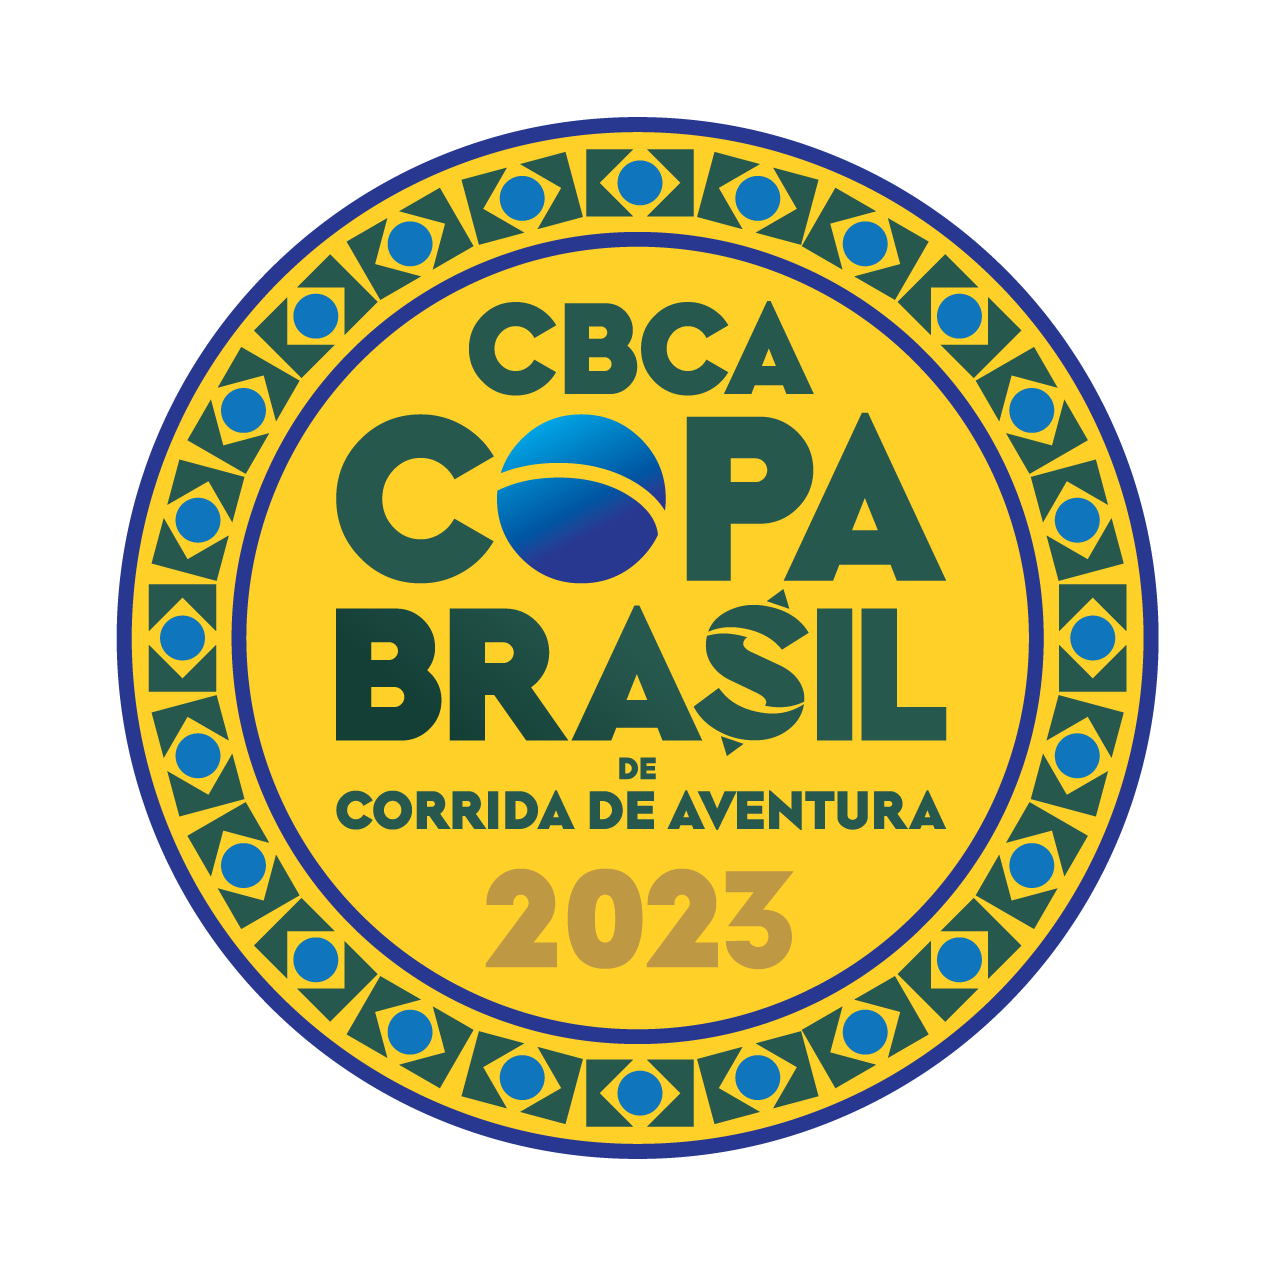 Copa do Brasil de Corrida de Aventura